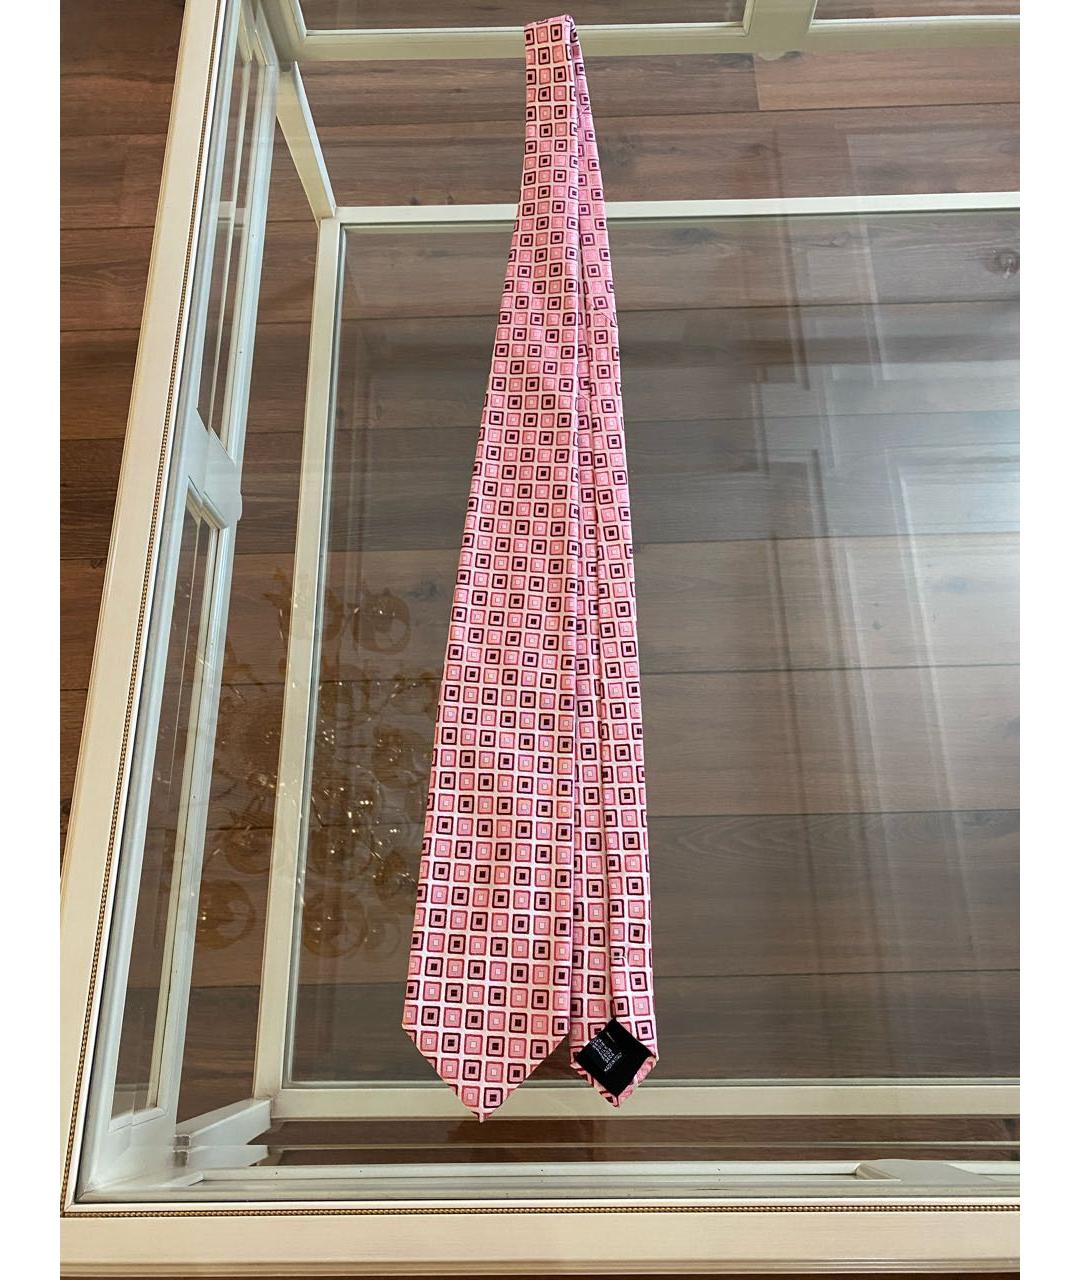 GUY LAROCHE Розовый шелковый галстук, фото 4